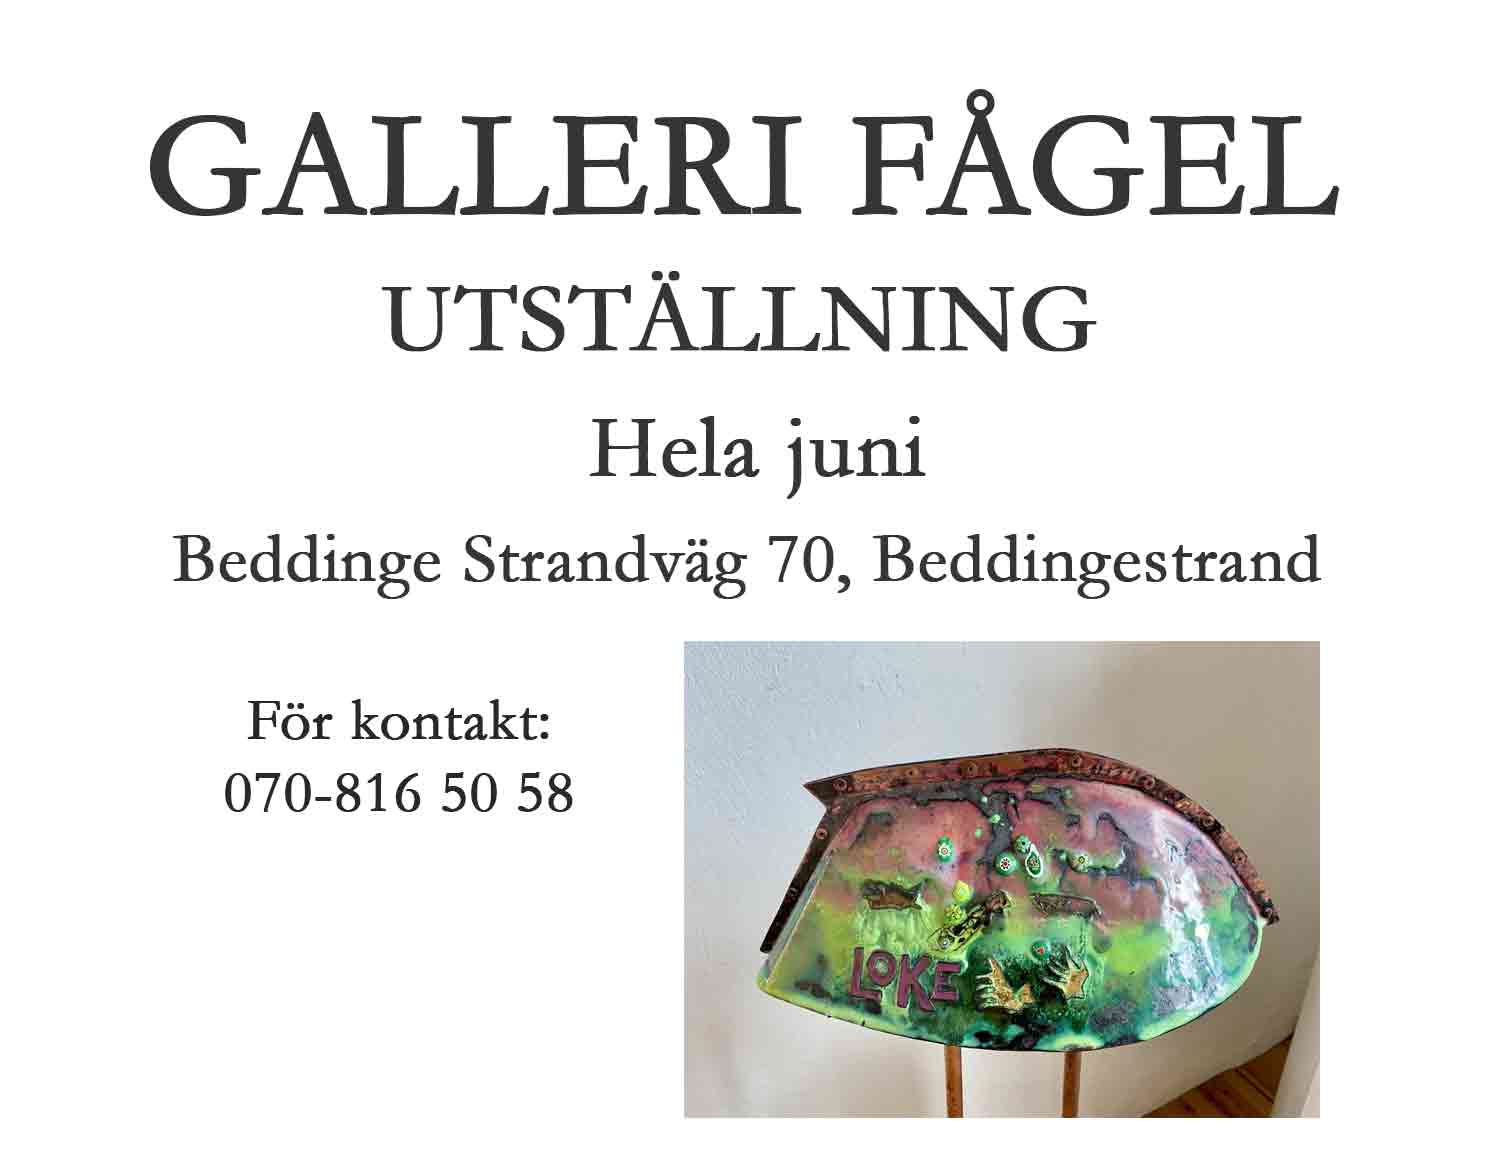 Malena Olsson på Galleri Fågel